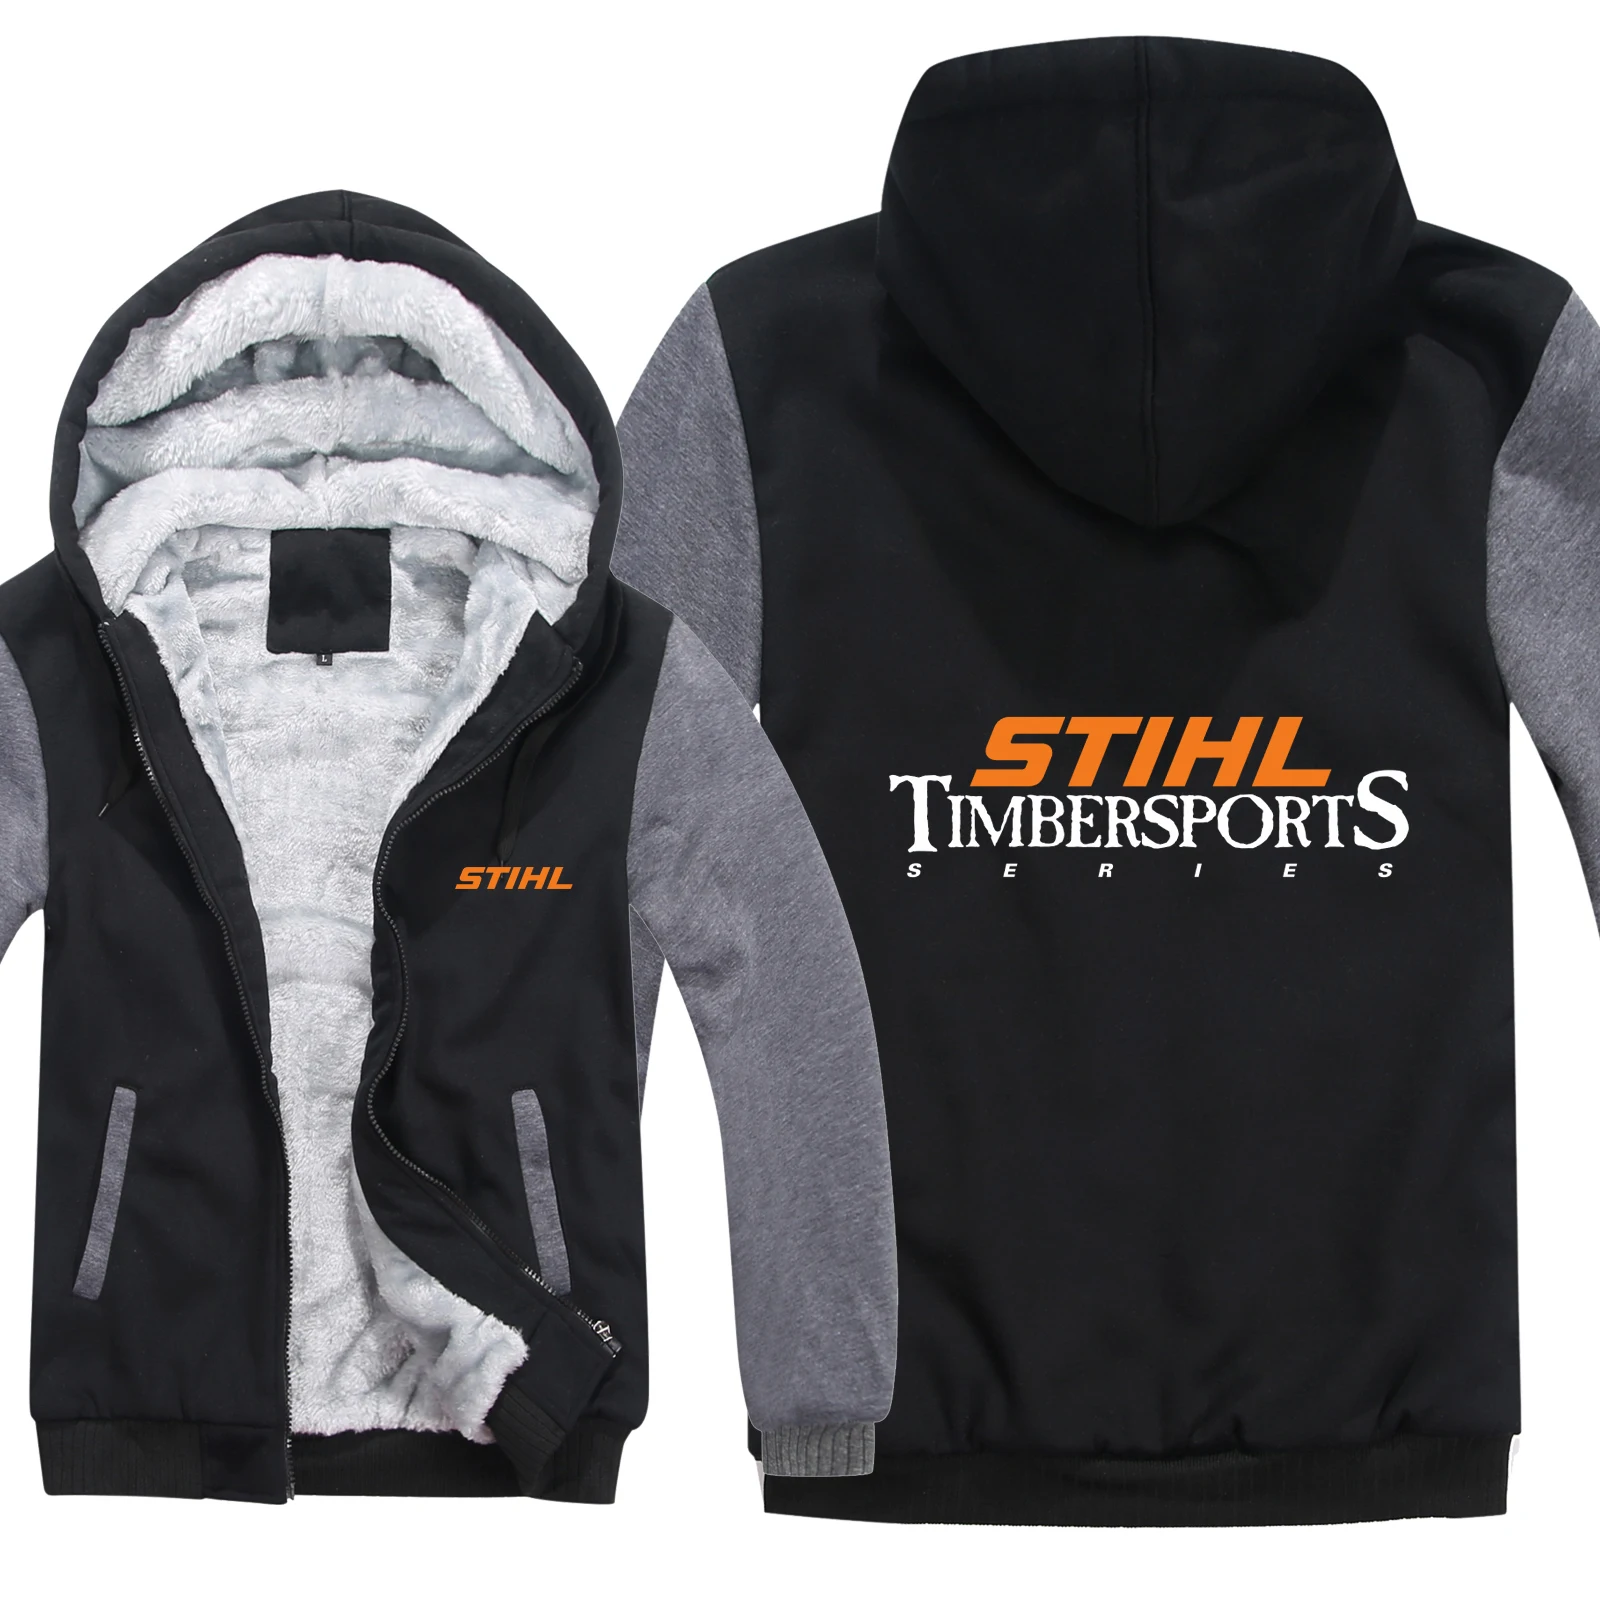 Stihl Timbersports серия толстовки мужские пуловеры шерстяная куртка с подкладкой Утепленные зимние толстовки Stihl Timbersports